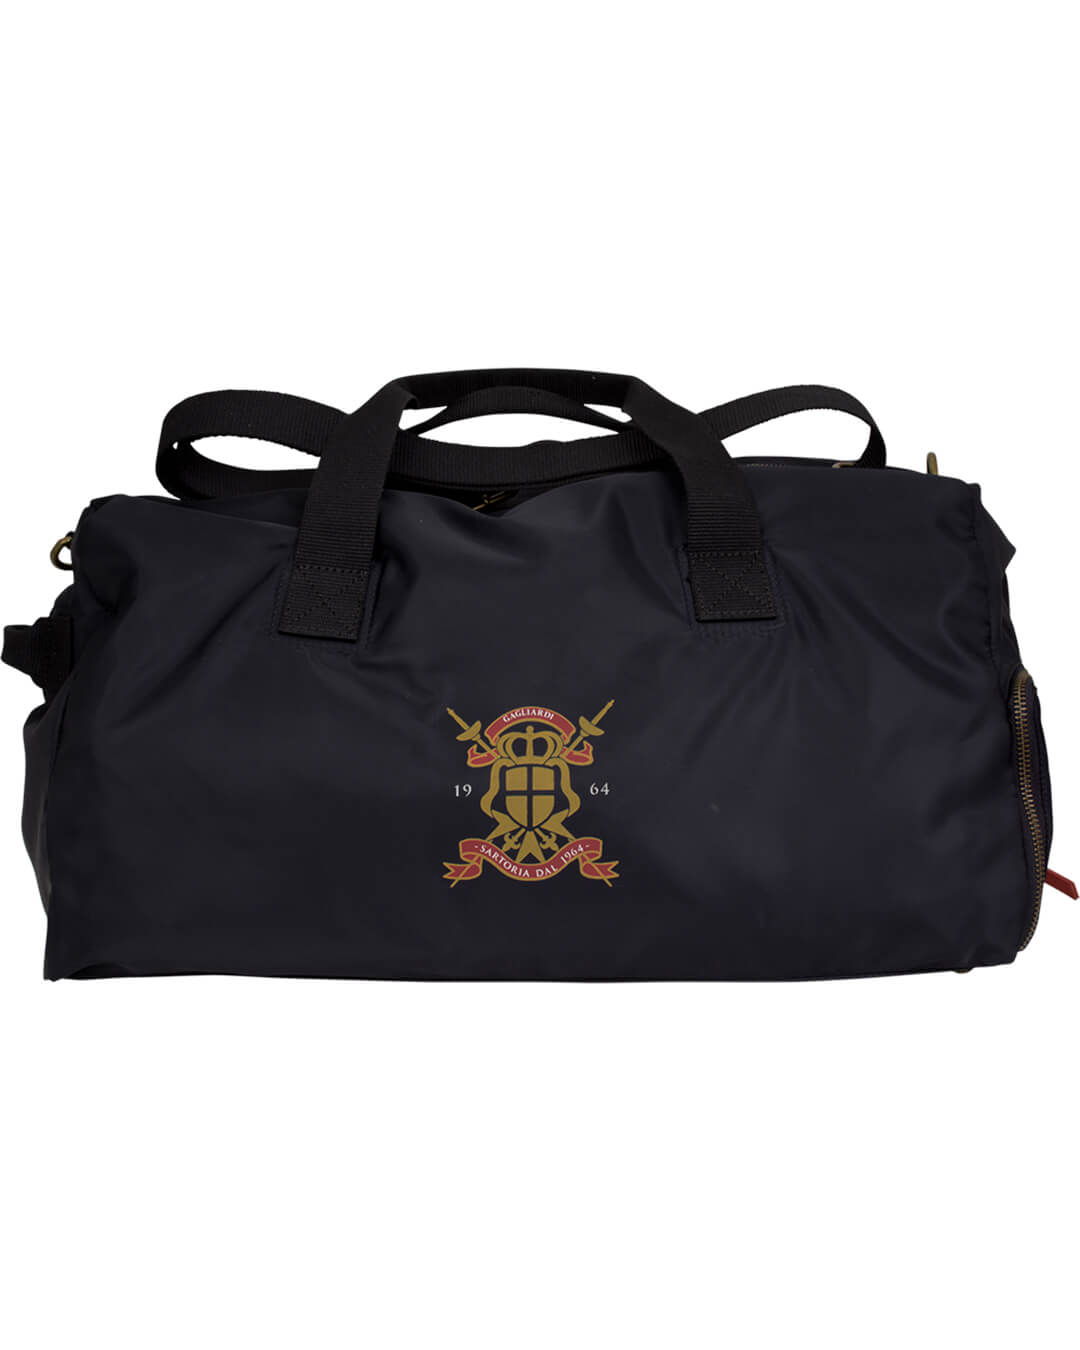 Gagliardi Bags Gagliardi Navy Nylon Gym Bag